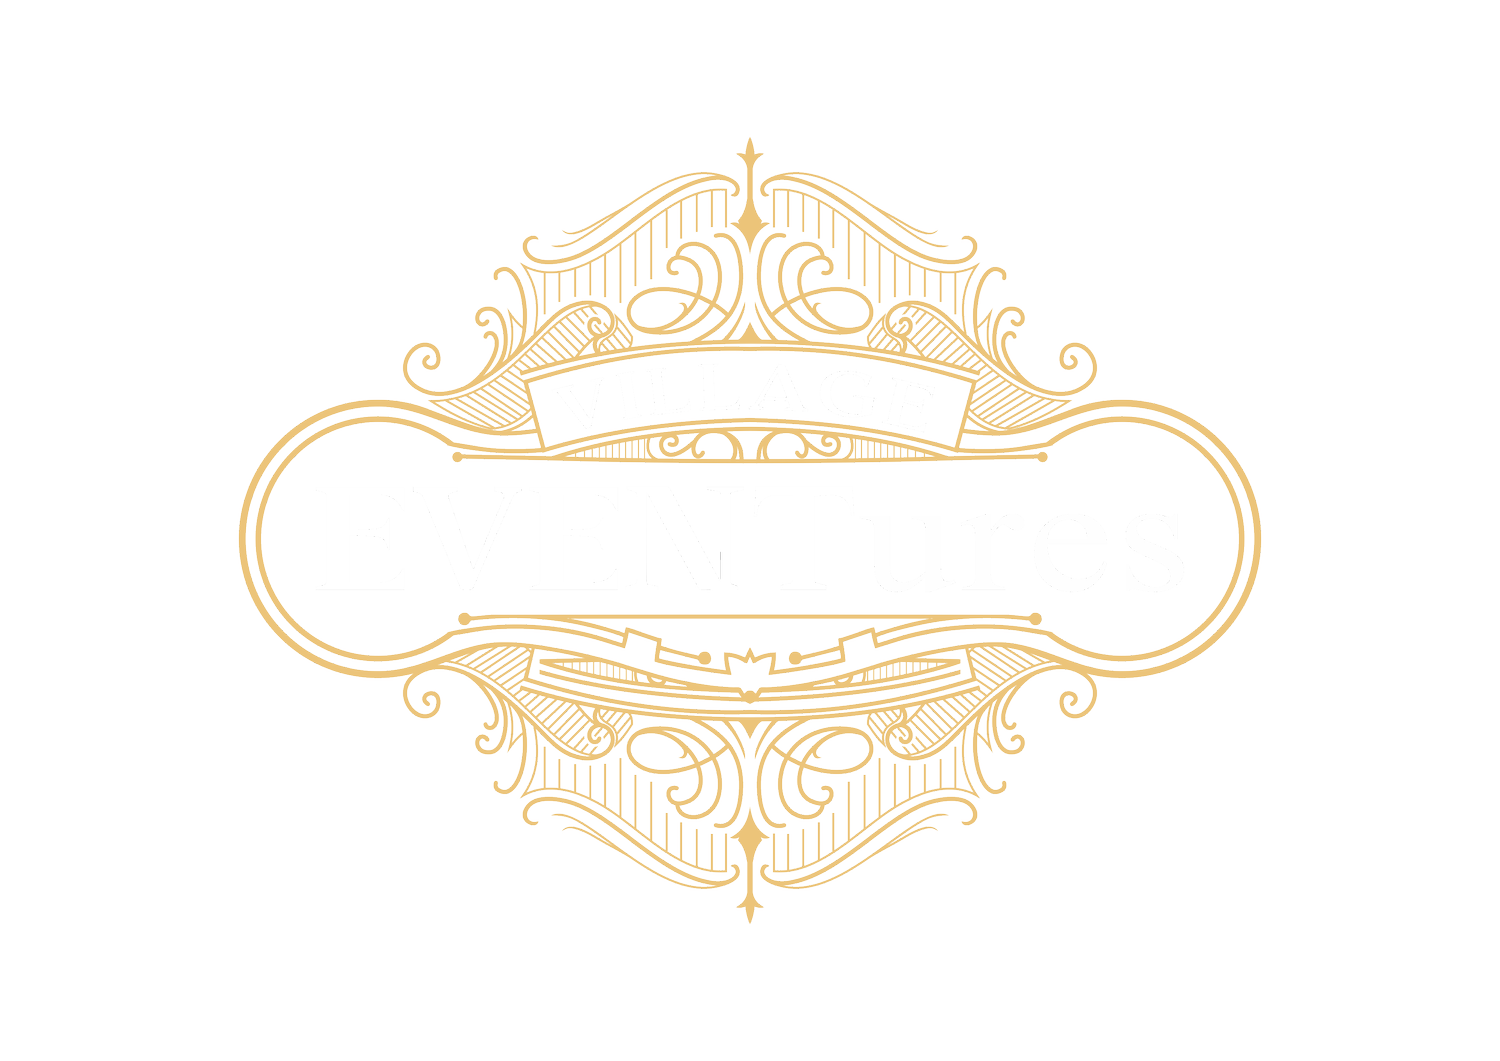 Village EVENTures